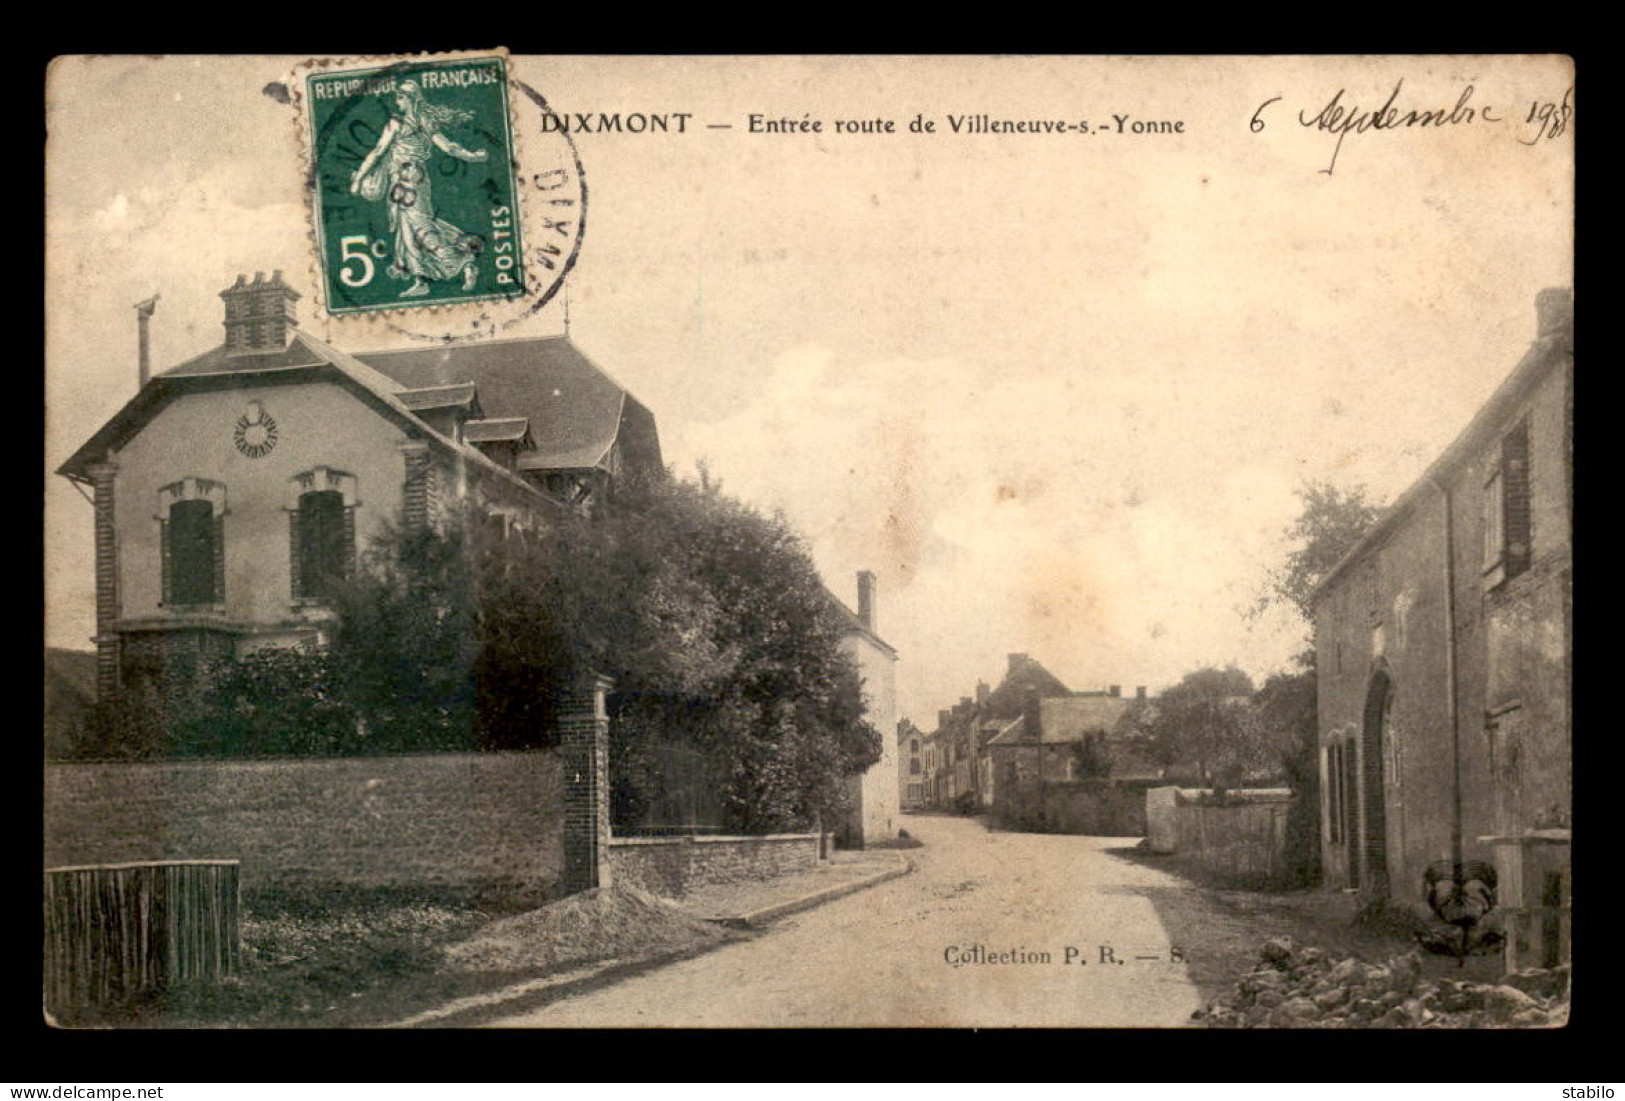 89 - DIXMONT - ENTREE ROUTE DE VILLENEUVE-SUR-YONNE - Dixmont